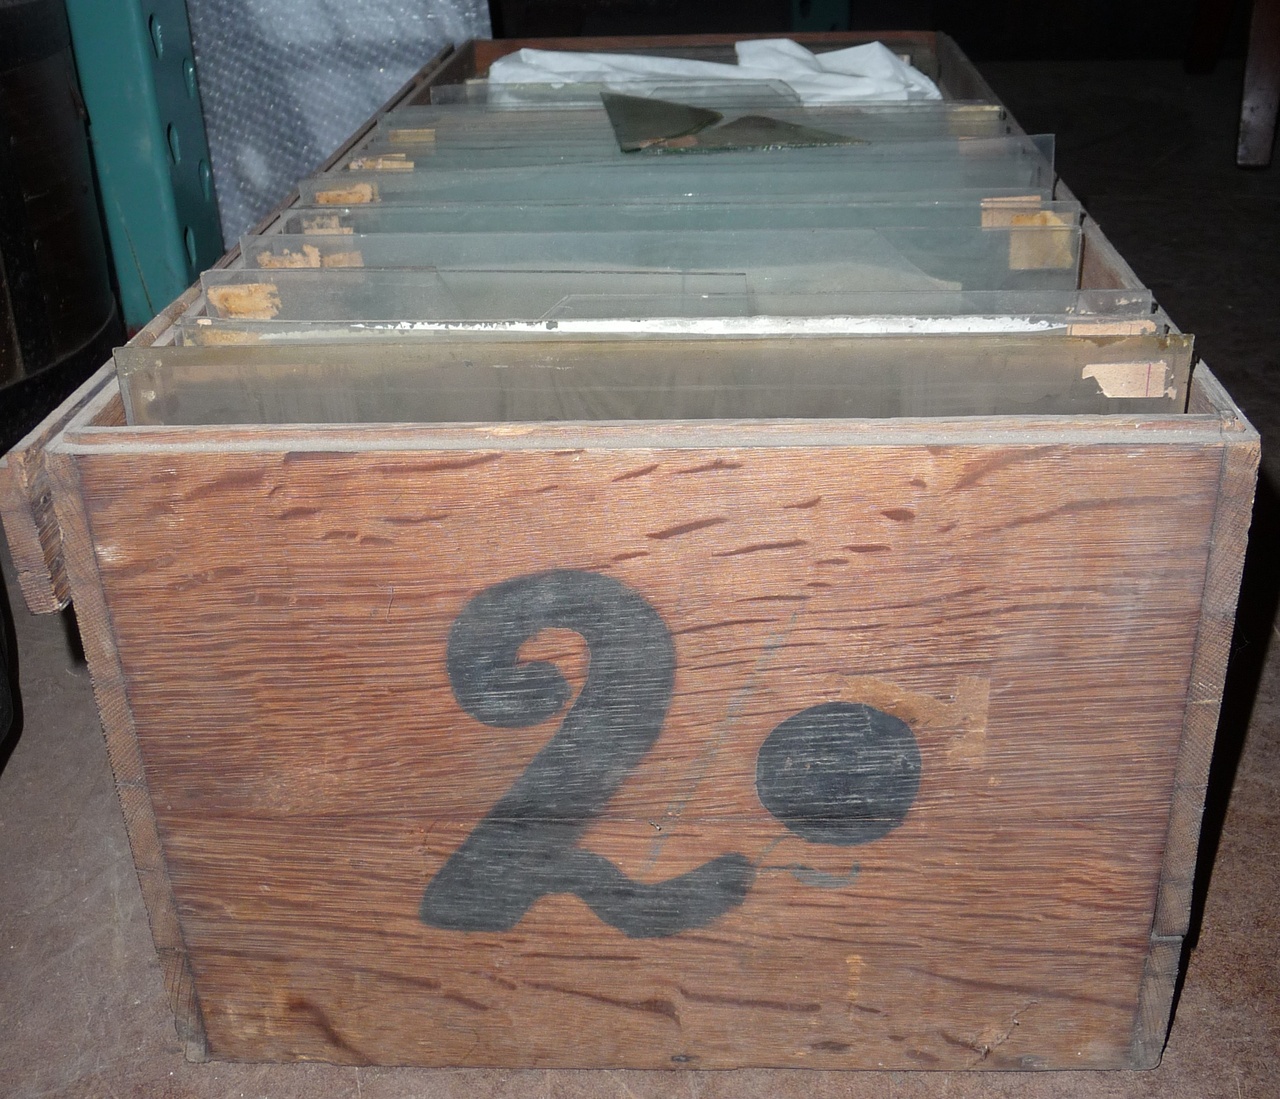 Kist voor glasnegatieven met nummer 2 (groot).